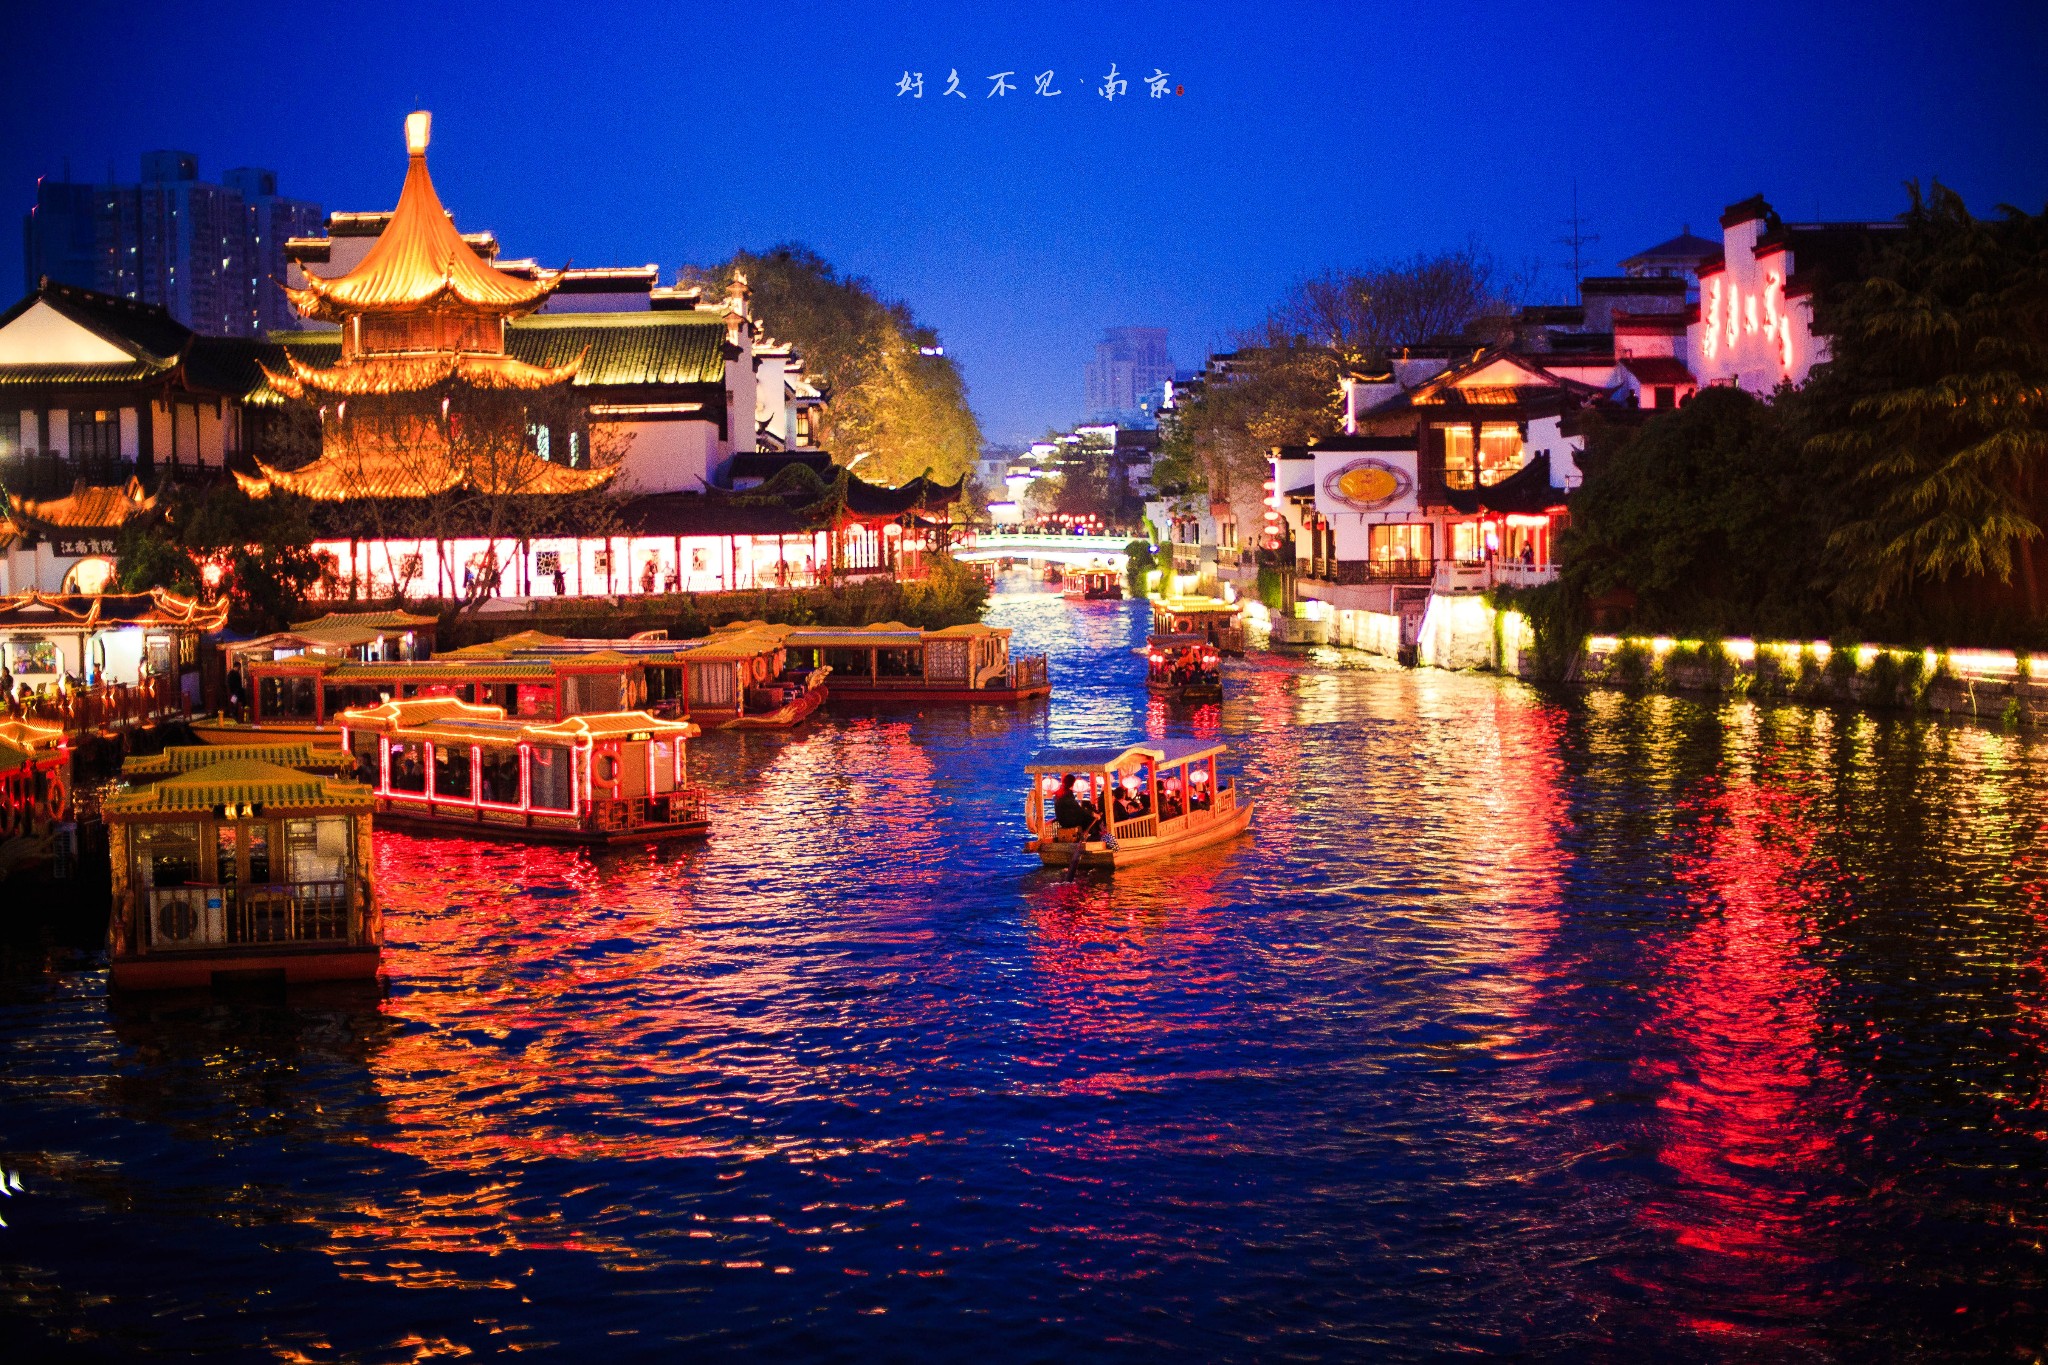 南京旅游图片,南京自助游图片,南京旅游景点照